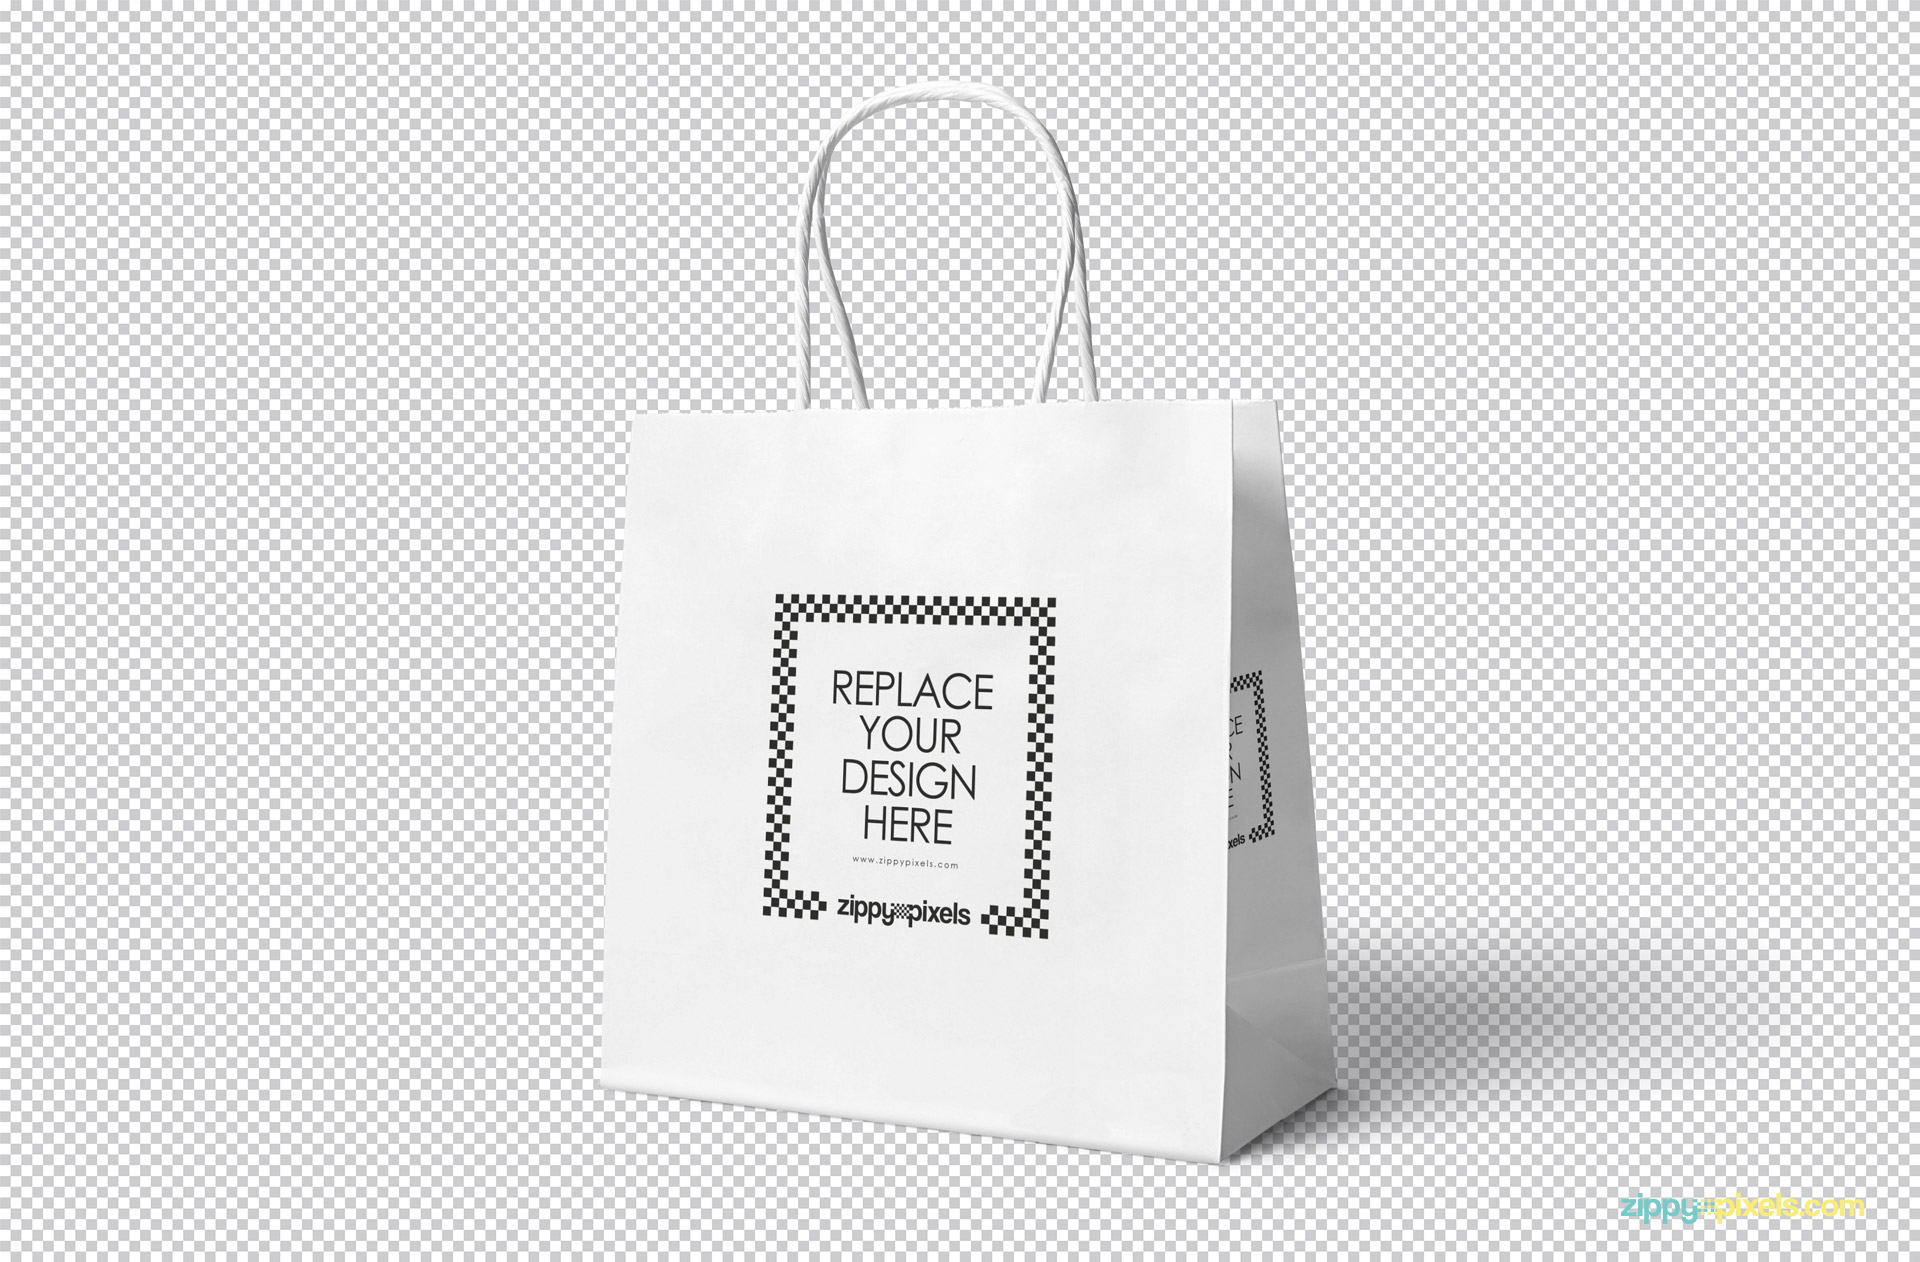 Download Gift Bag PSD Mockup Download for Free - DesignHooks